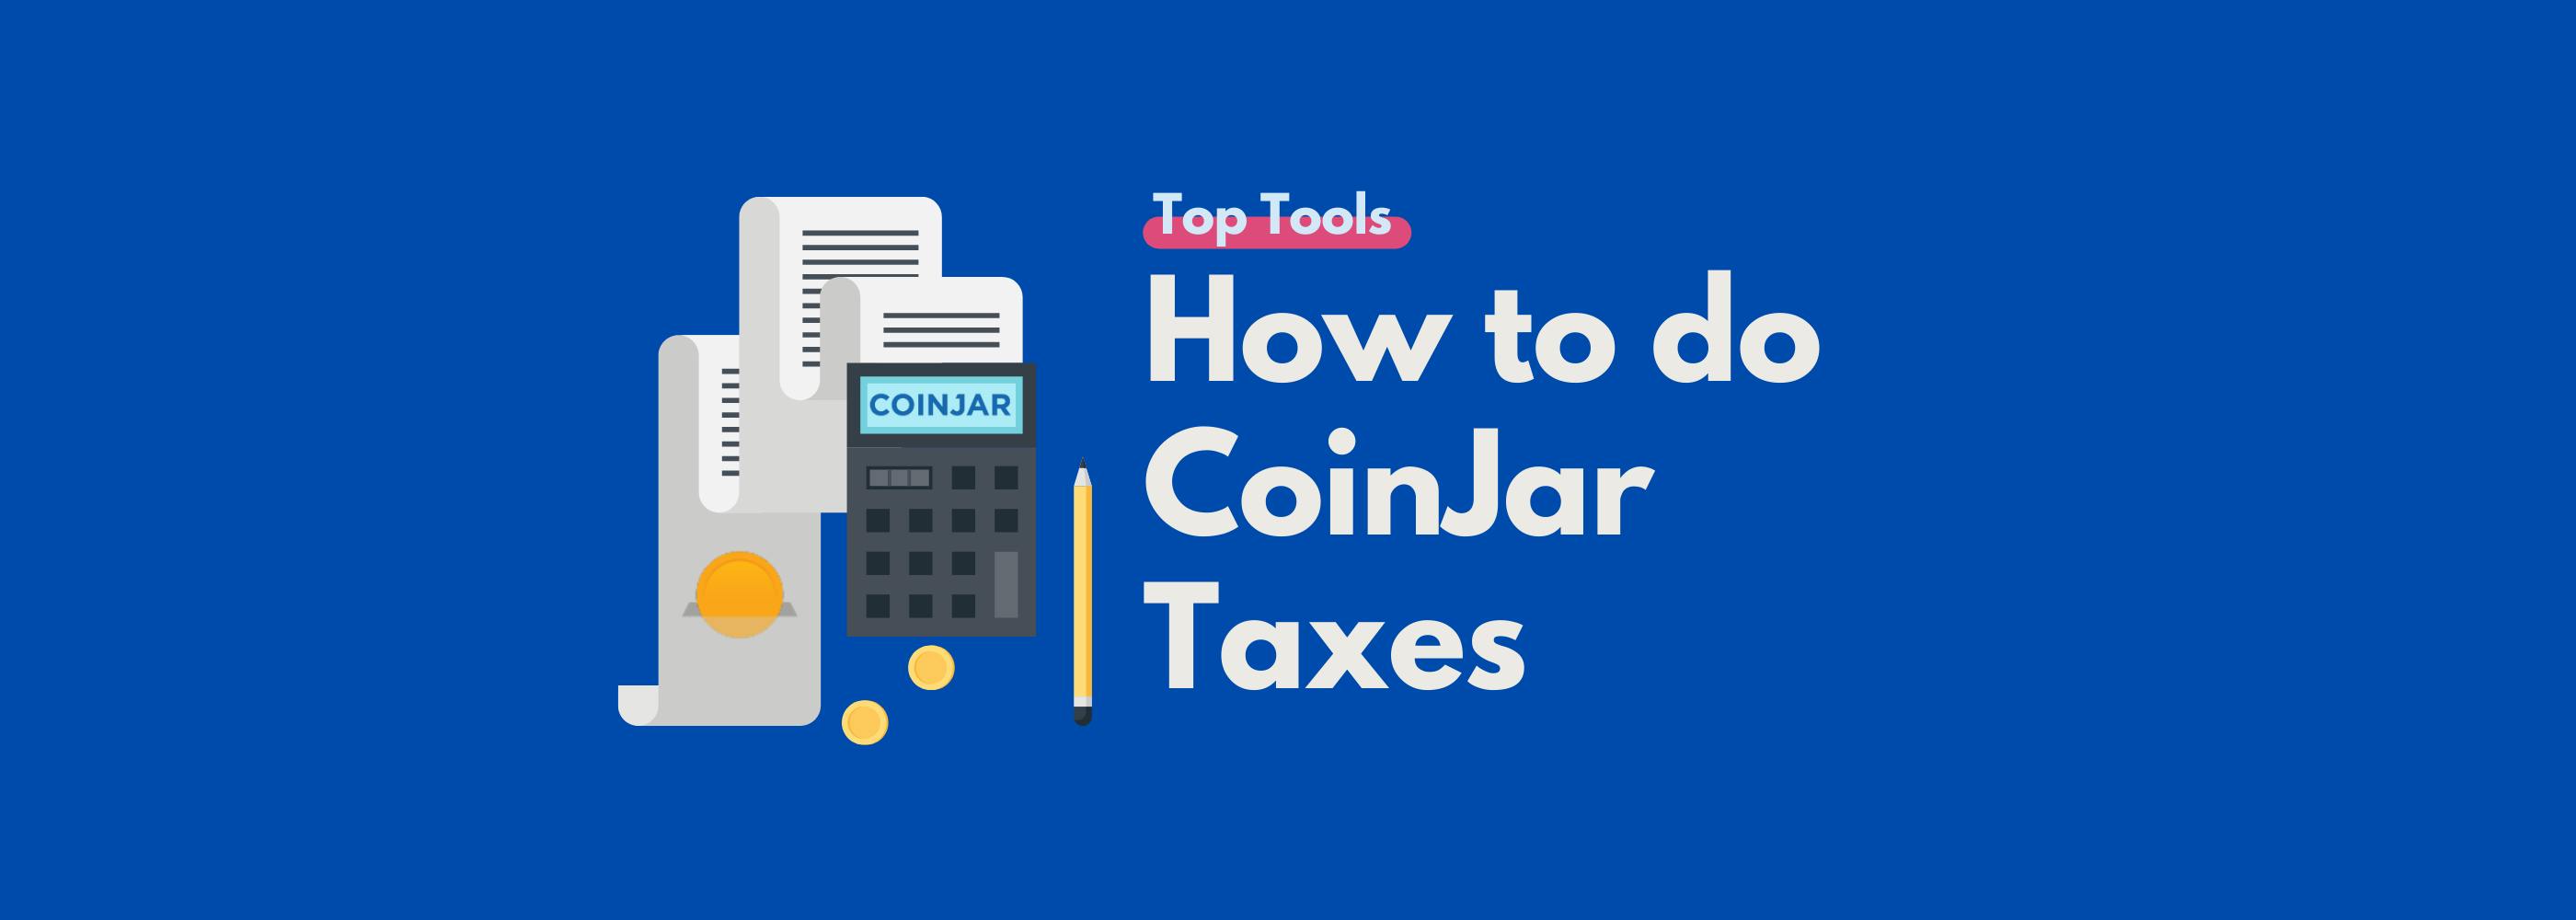 CoinJar tax guide